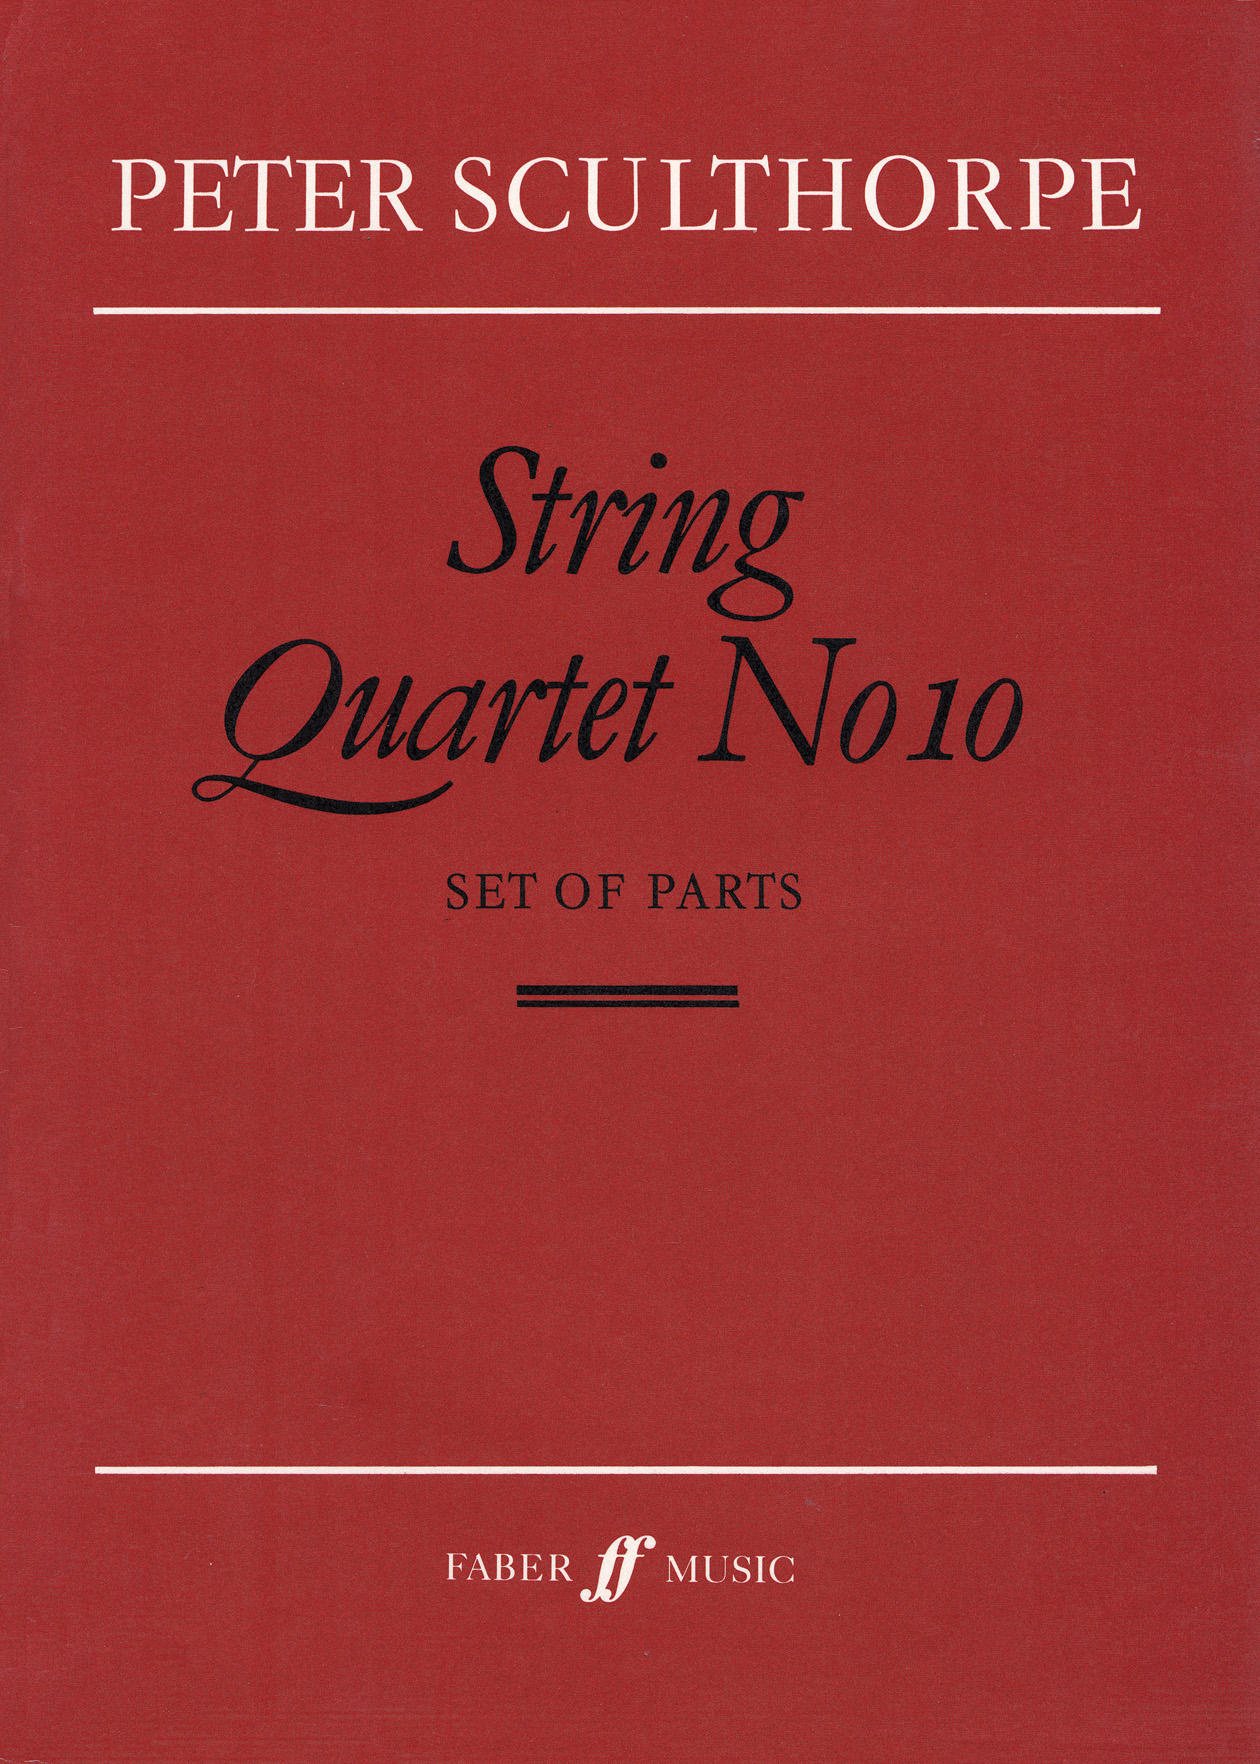 Peter Sculthorpe: String Quartet No.10: String Quartet